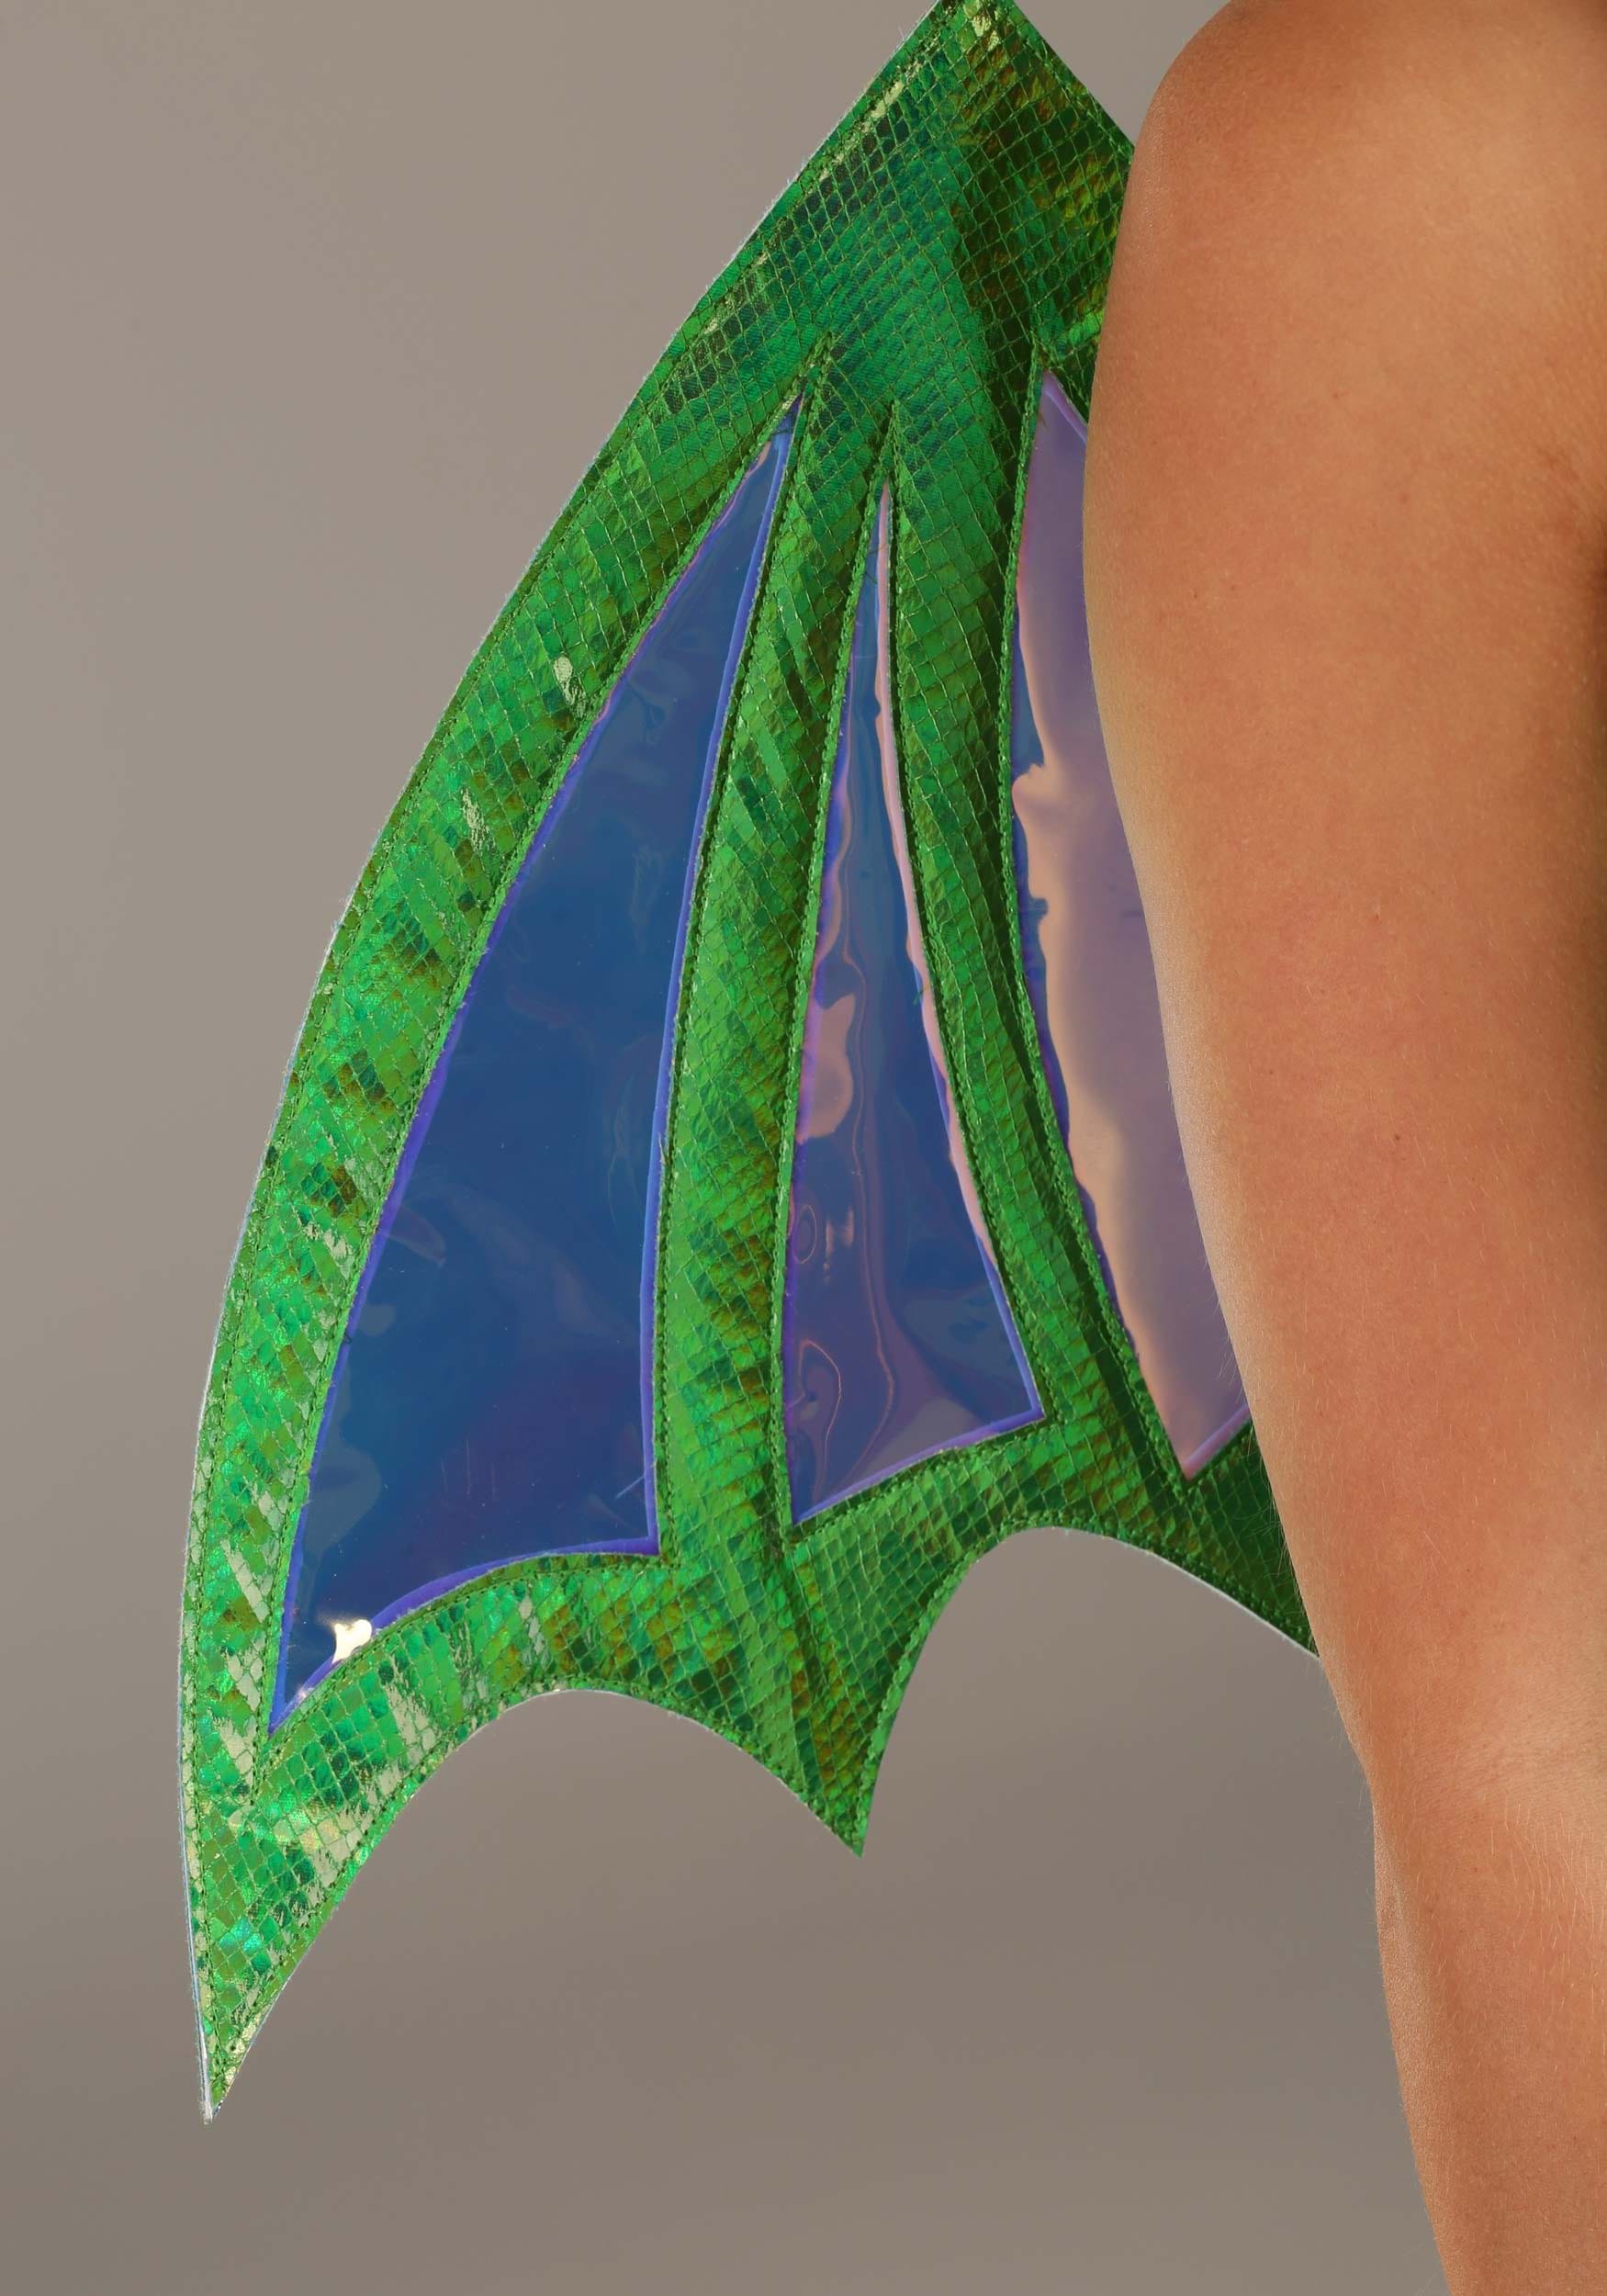 Dreamscape Dragon Fancy Dress Costume For Women